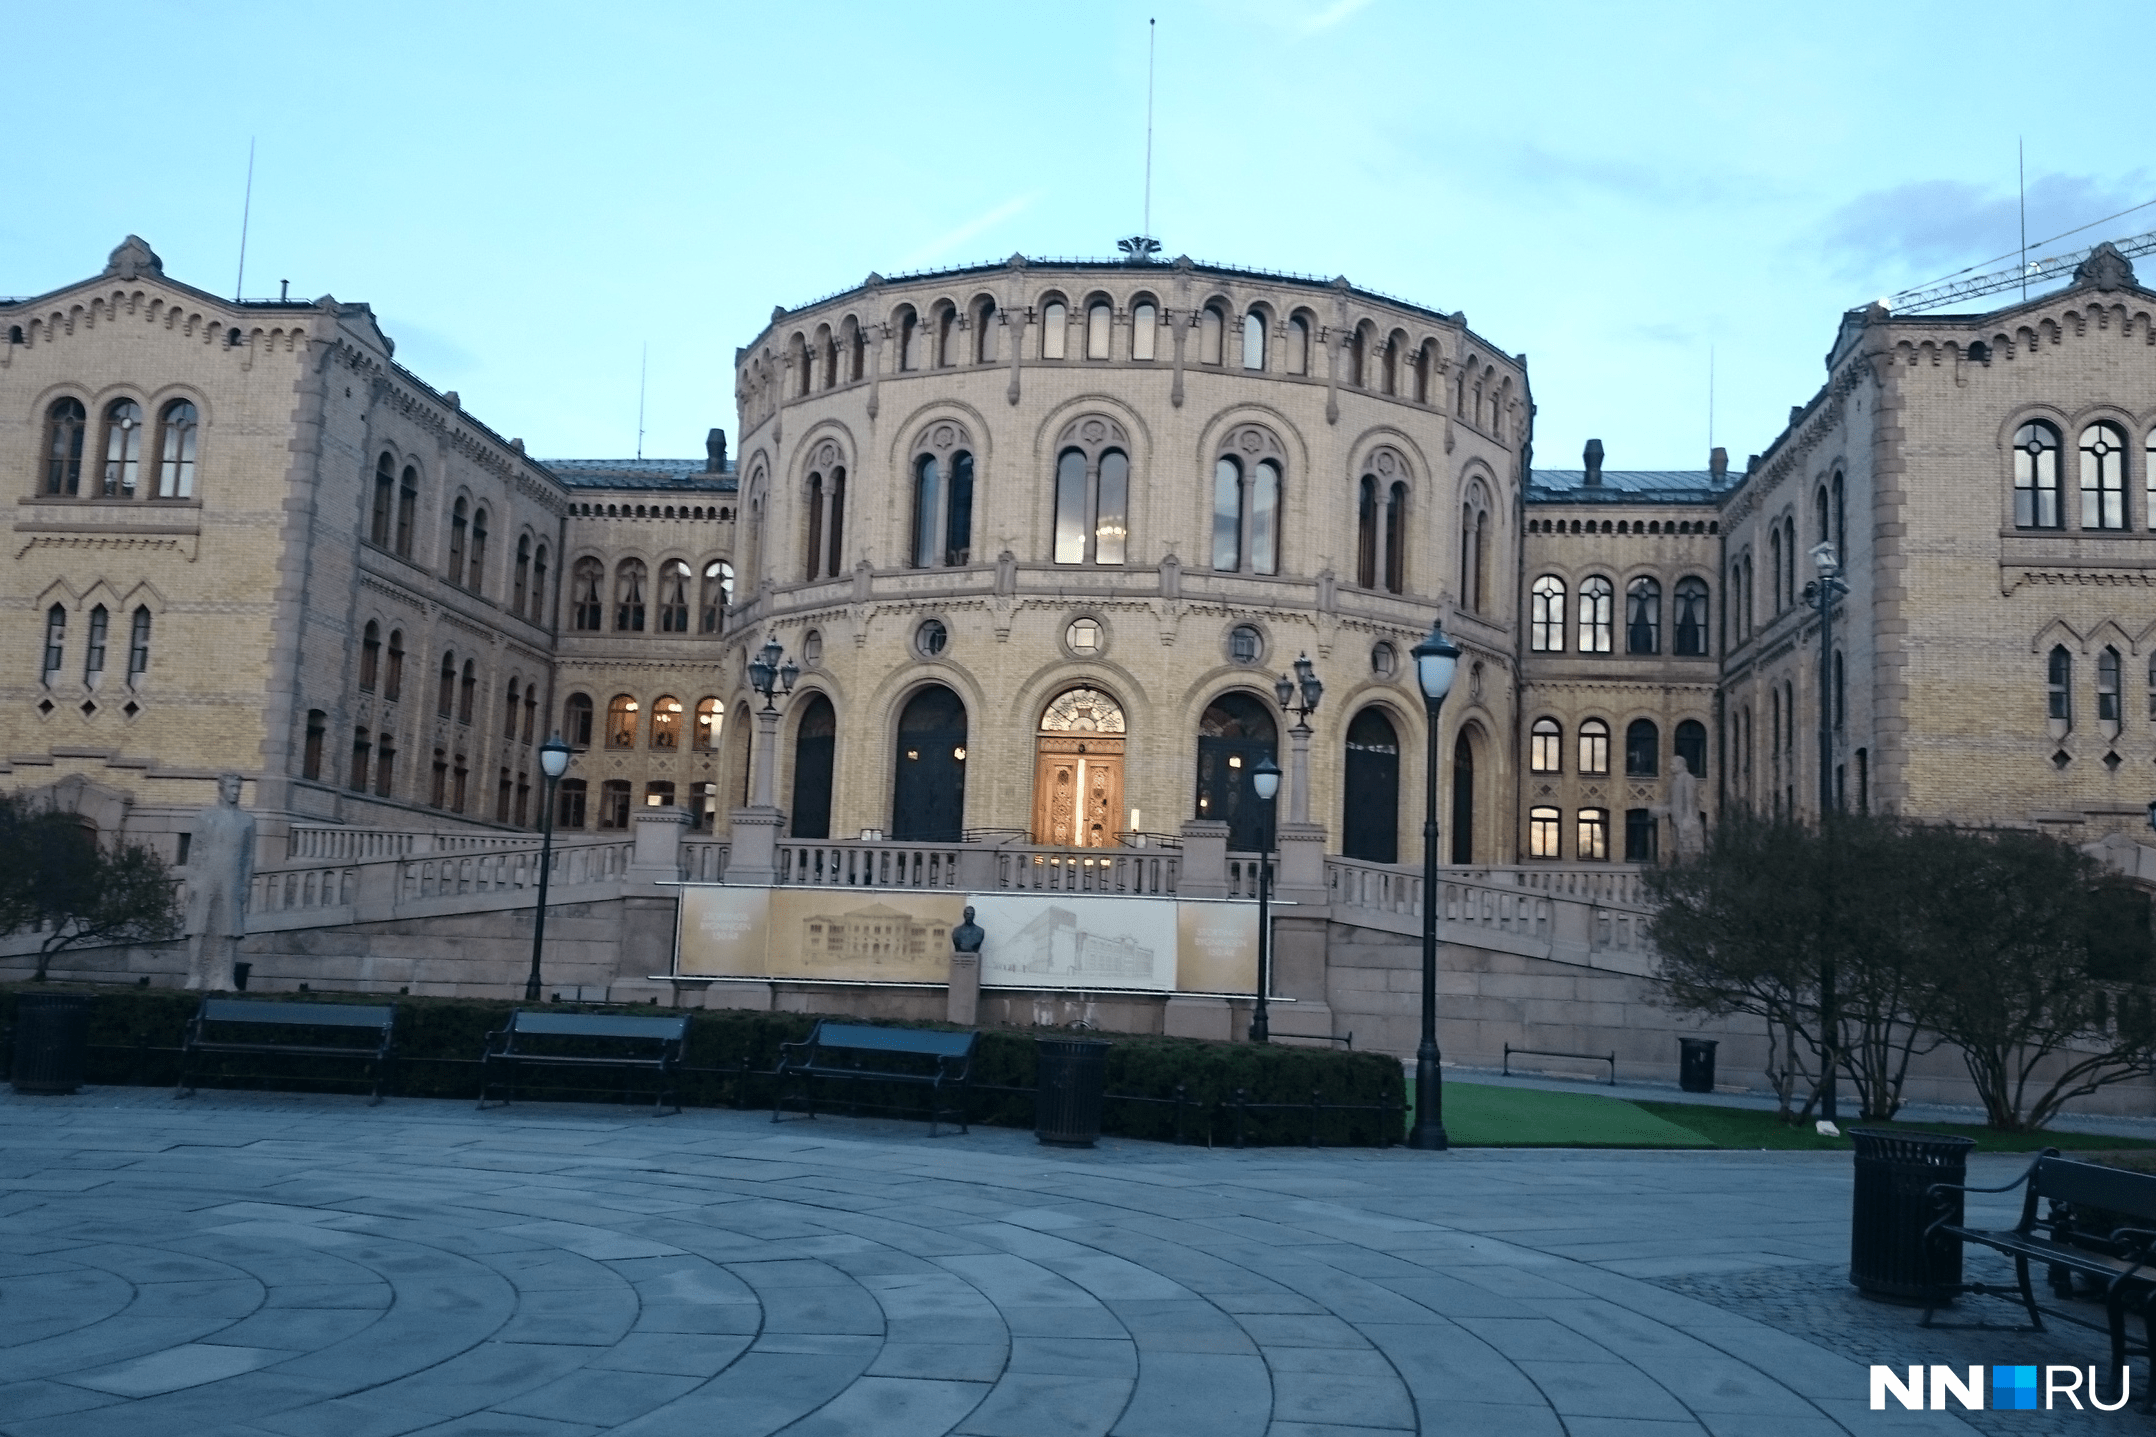 Так выглядит здание норвежского парламента — Стортинга